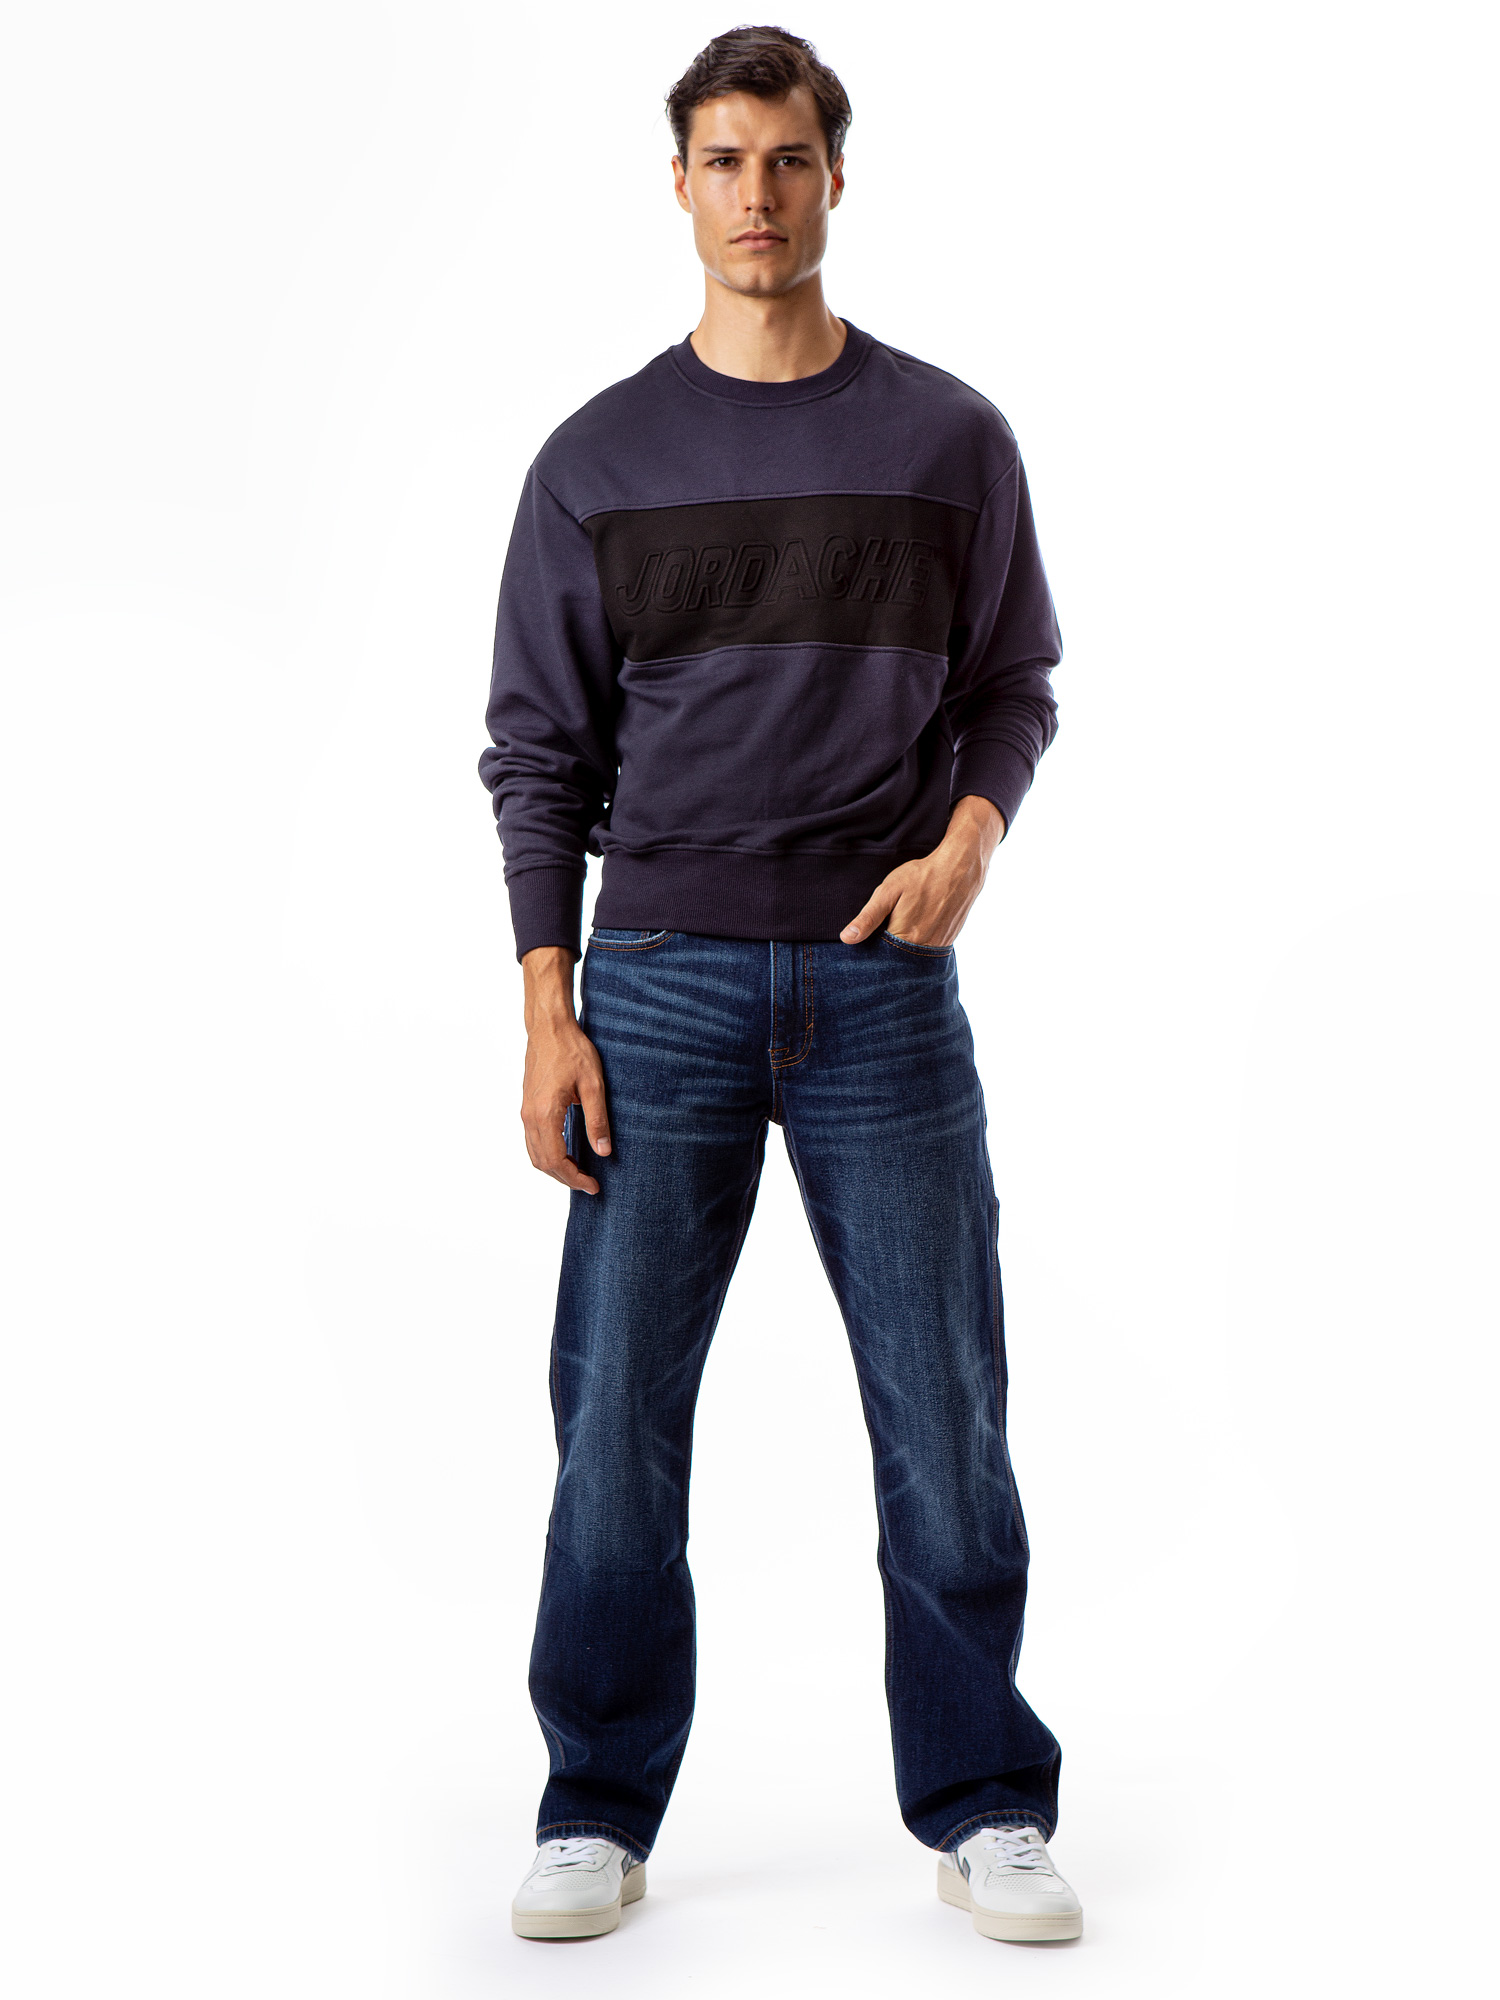 Jordache Vintage Men's Aaron Colorblocked Sweatshirt - image 5 of 5